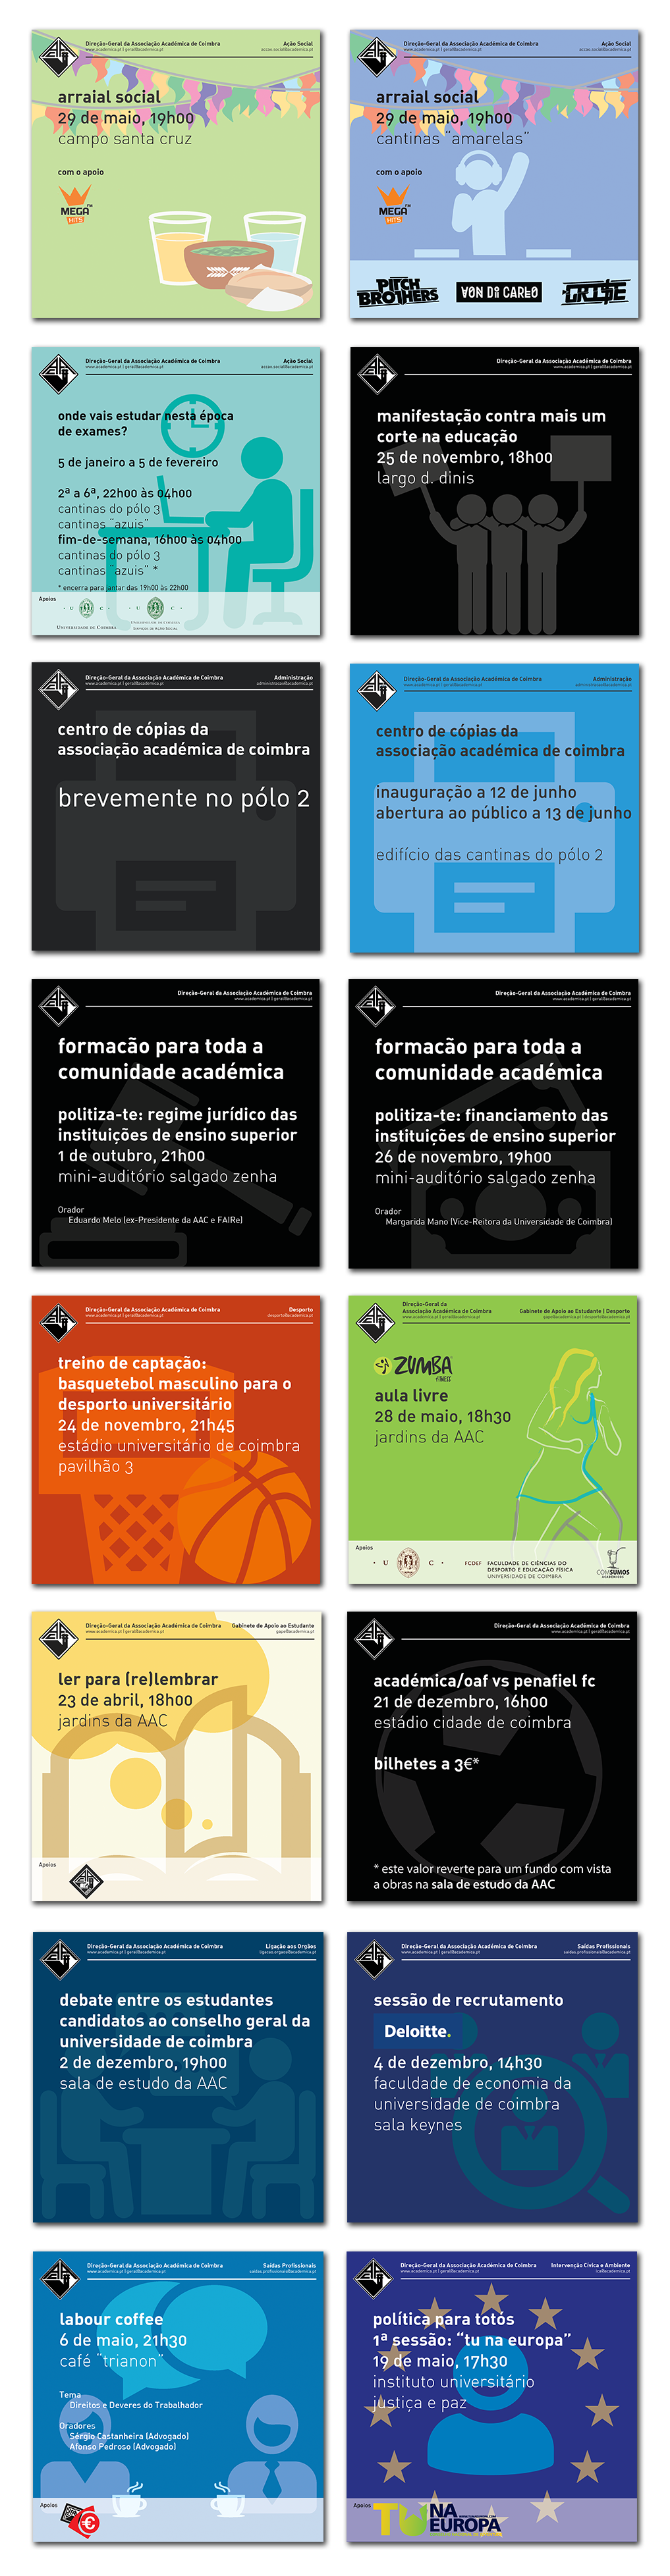 associação academica Coimbra